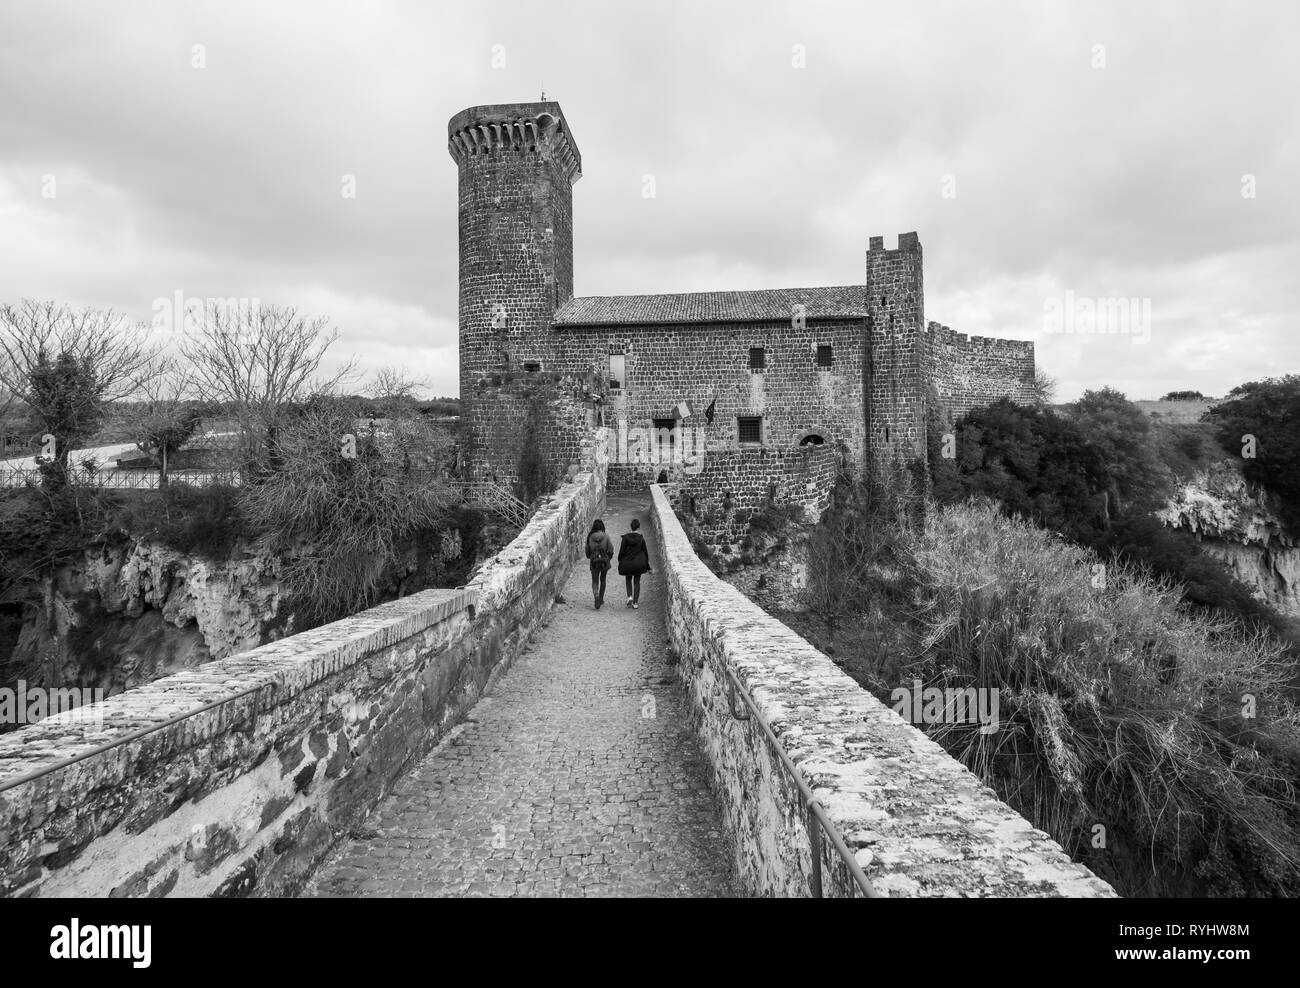 Vulci (Italie) - Le château médiéval de Vulci, musée maintenant, avec pont du diable. Vulci est une ville en ruines étrusques région du Latium, sur la rivière Fiora Banque D'Images